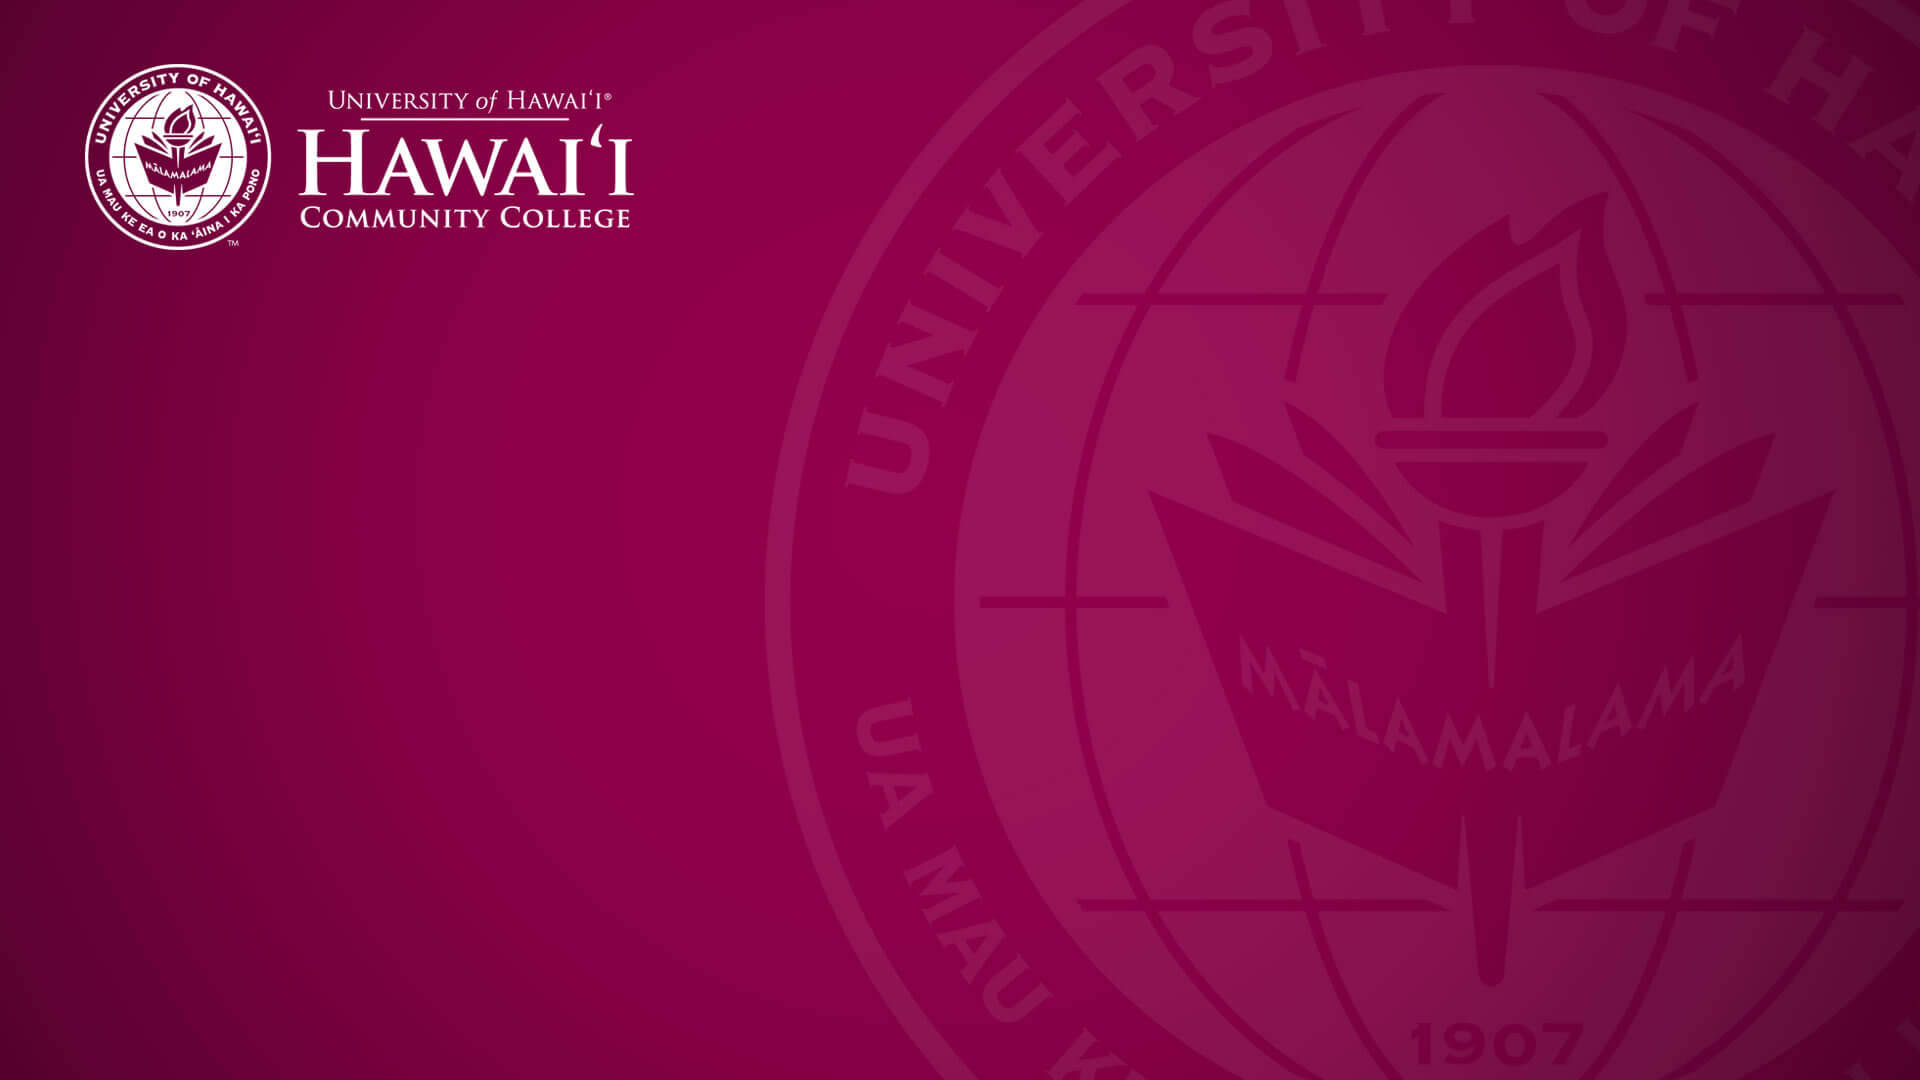 University Of Hawaii Community College mørk rød og sort klædt tapet. Wallpaper